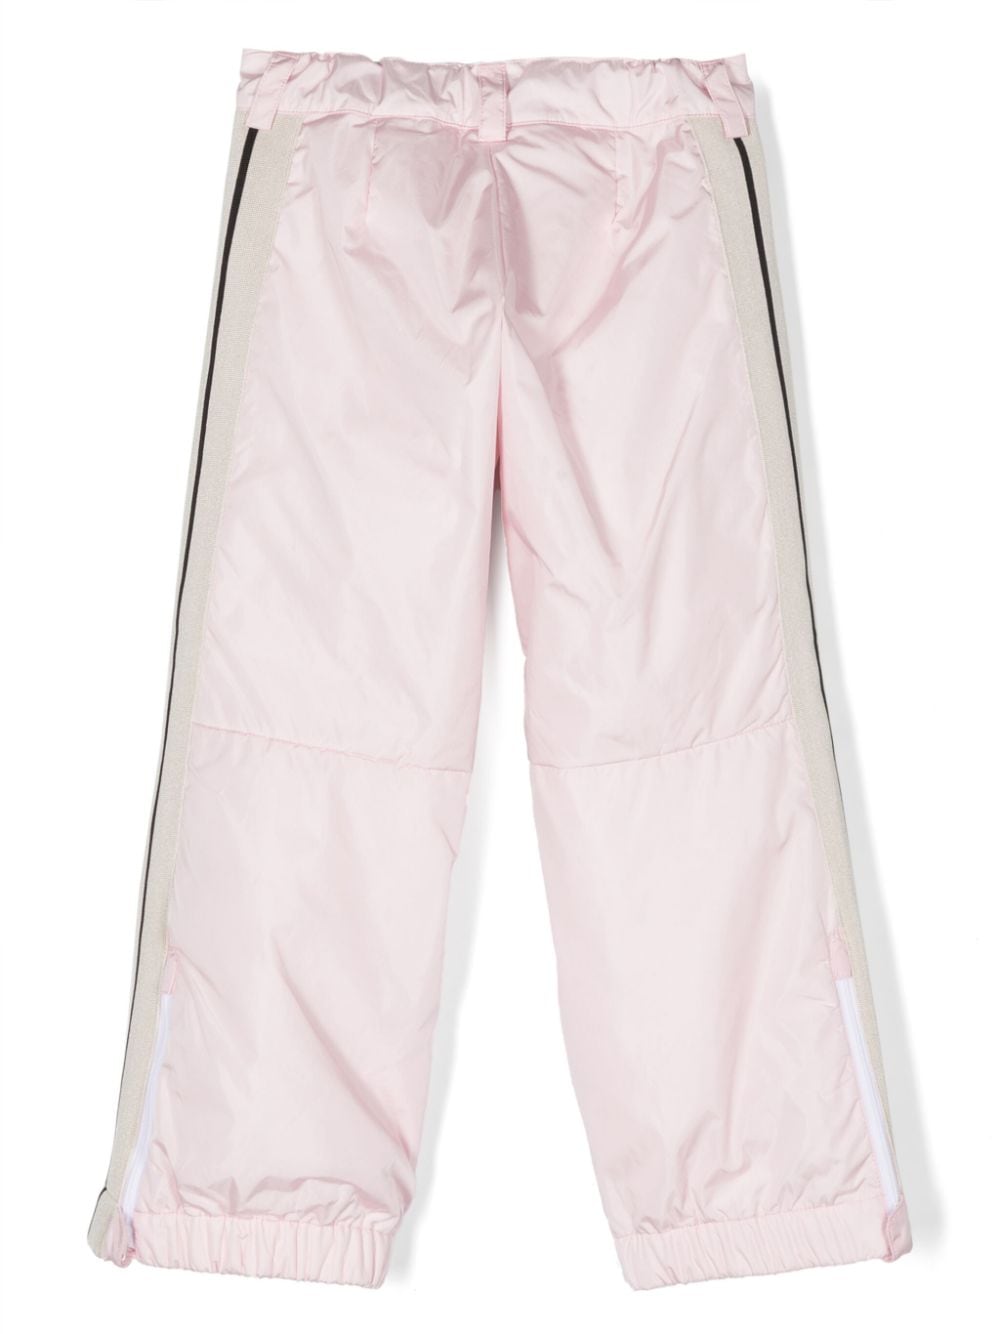 Pantalon fille rose avec logo